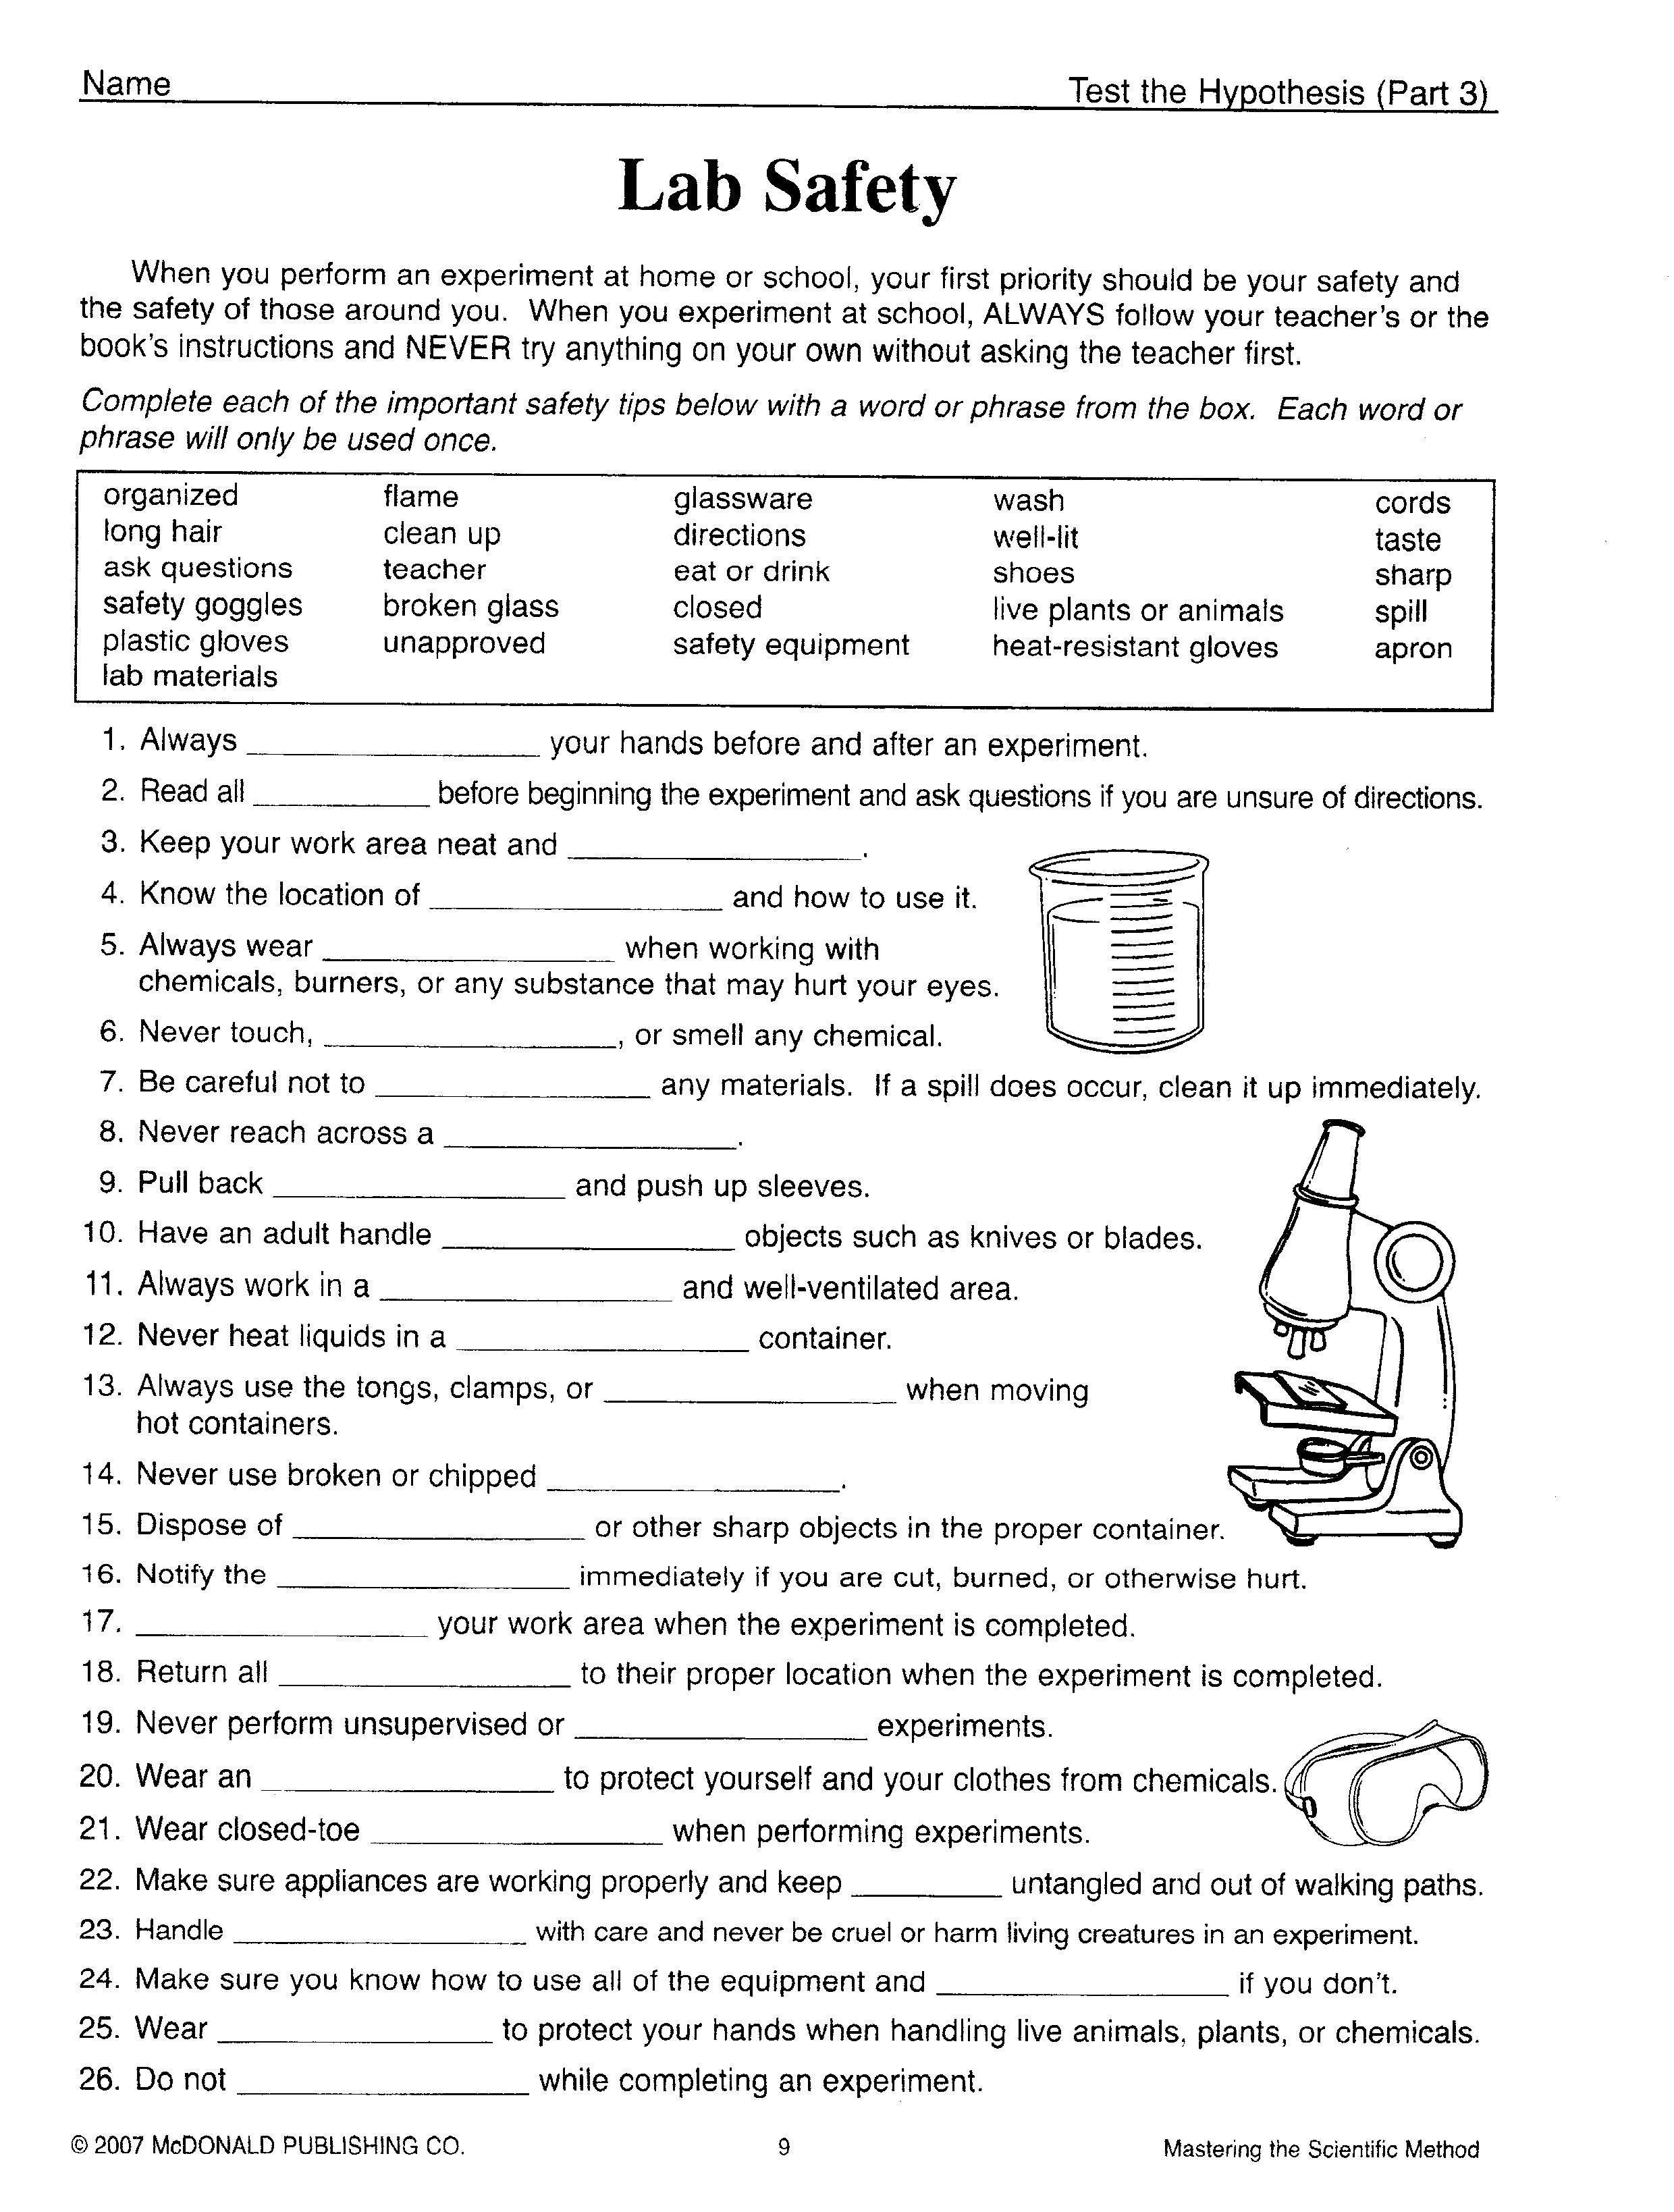 Science Tools Worksheet 4Th Grade Fresh Kids Science Worksheets Free | Science Worksheets For 4Th Grade Free Printable